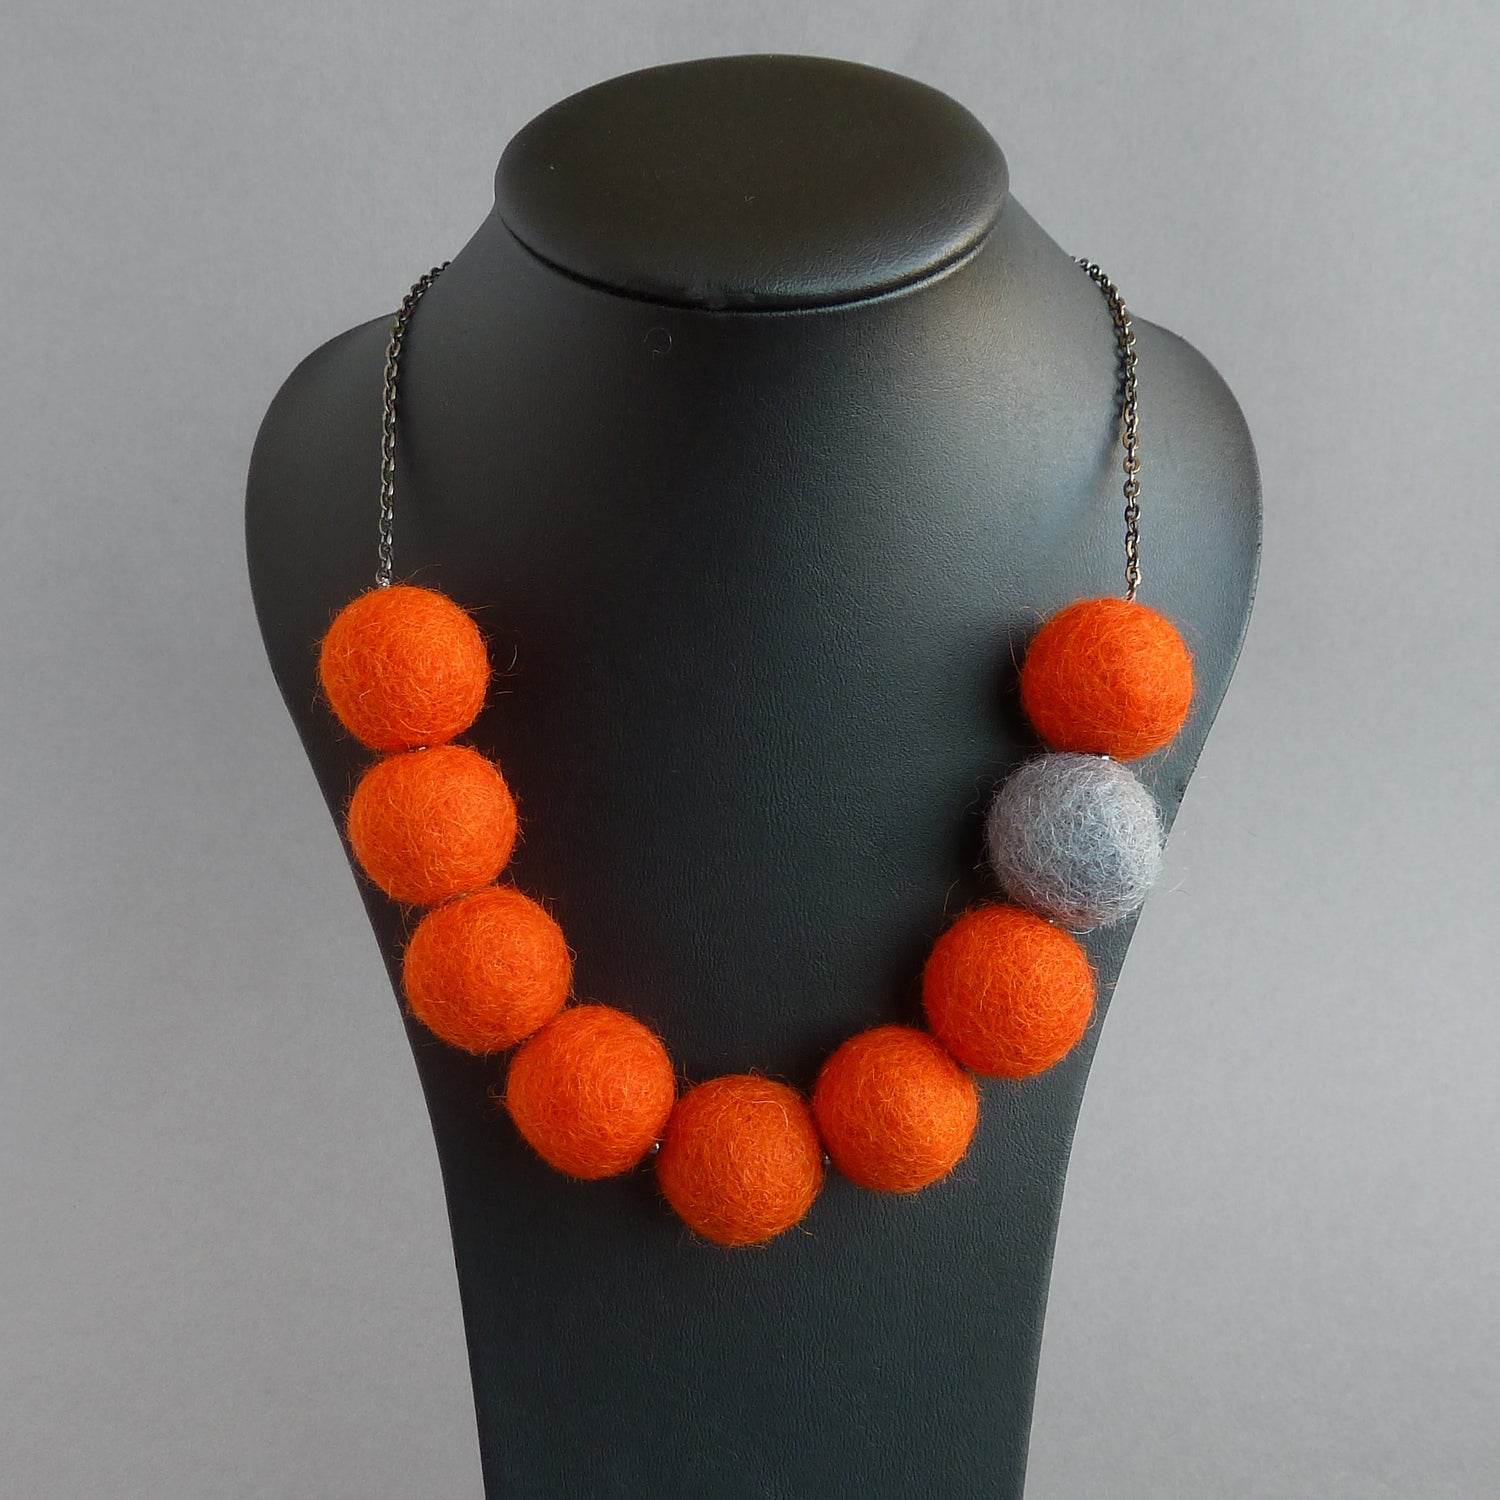 Chunky orange felt necklace